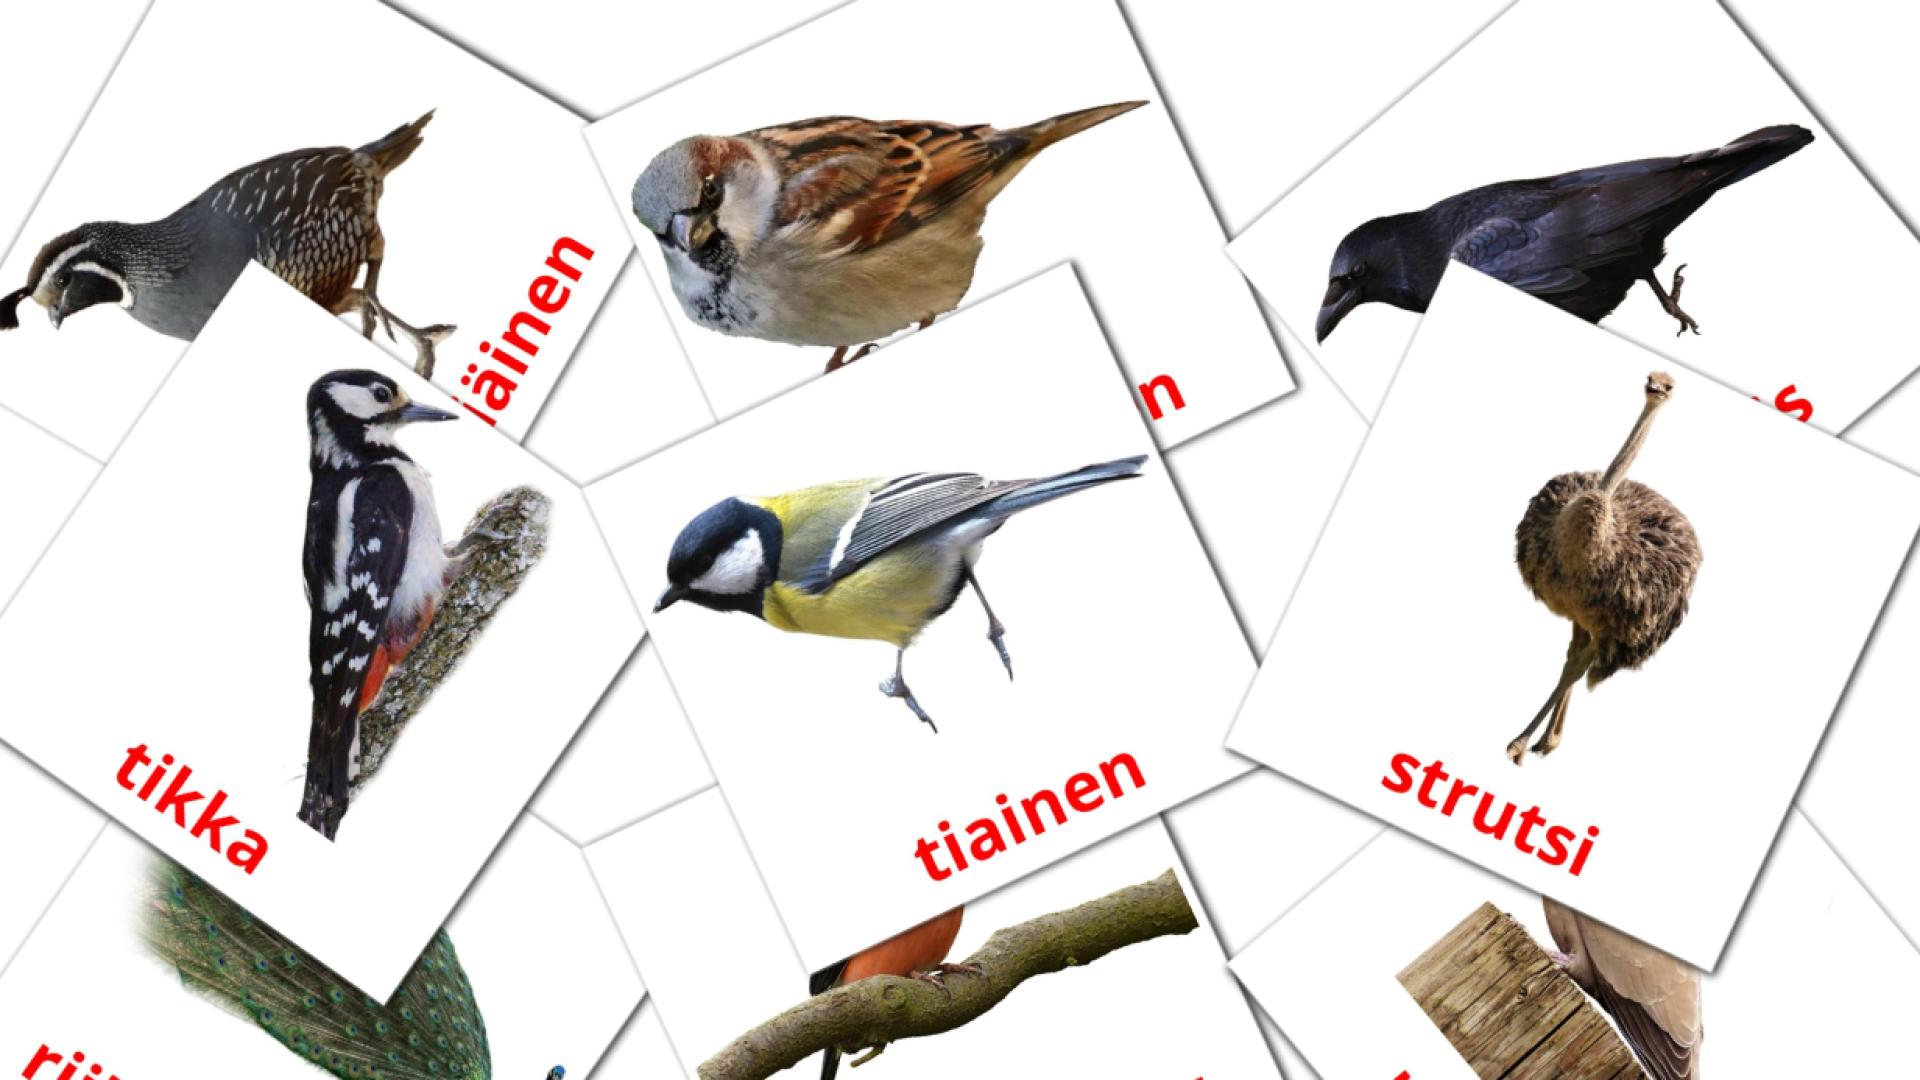 Linnut finse woordenschat flashcards